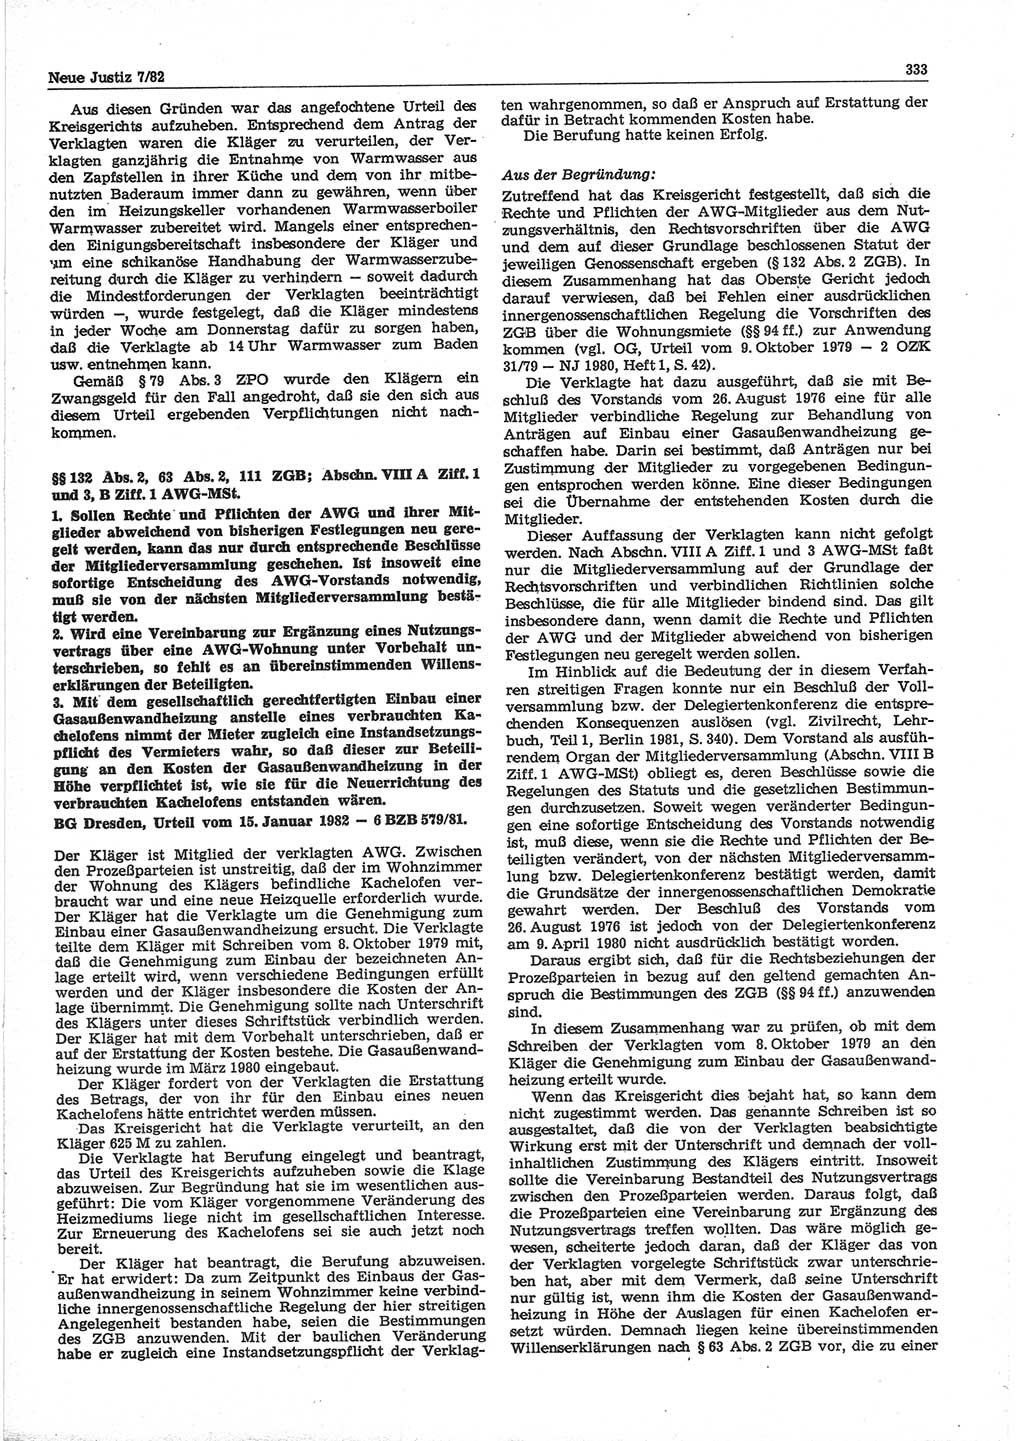 Neue Justiz (NJ), Zeitschrift für sozialistisches Recht und Gesetzlichkeit [Deutsche Demokratische Republik (DDR)], 36. Jahrgang 1982, Seite 333 (NJ DDR 1982, S. 333)